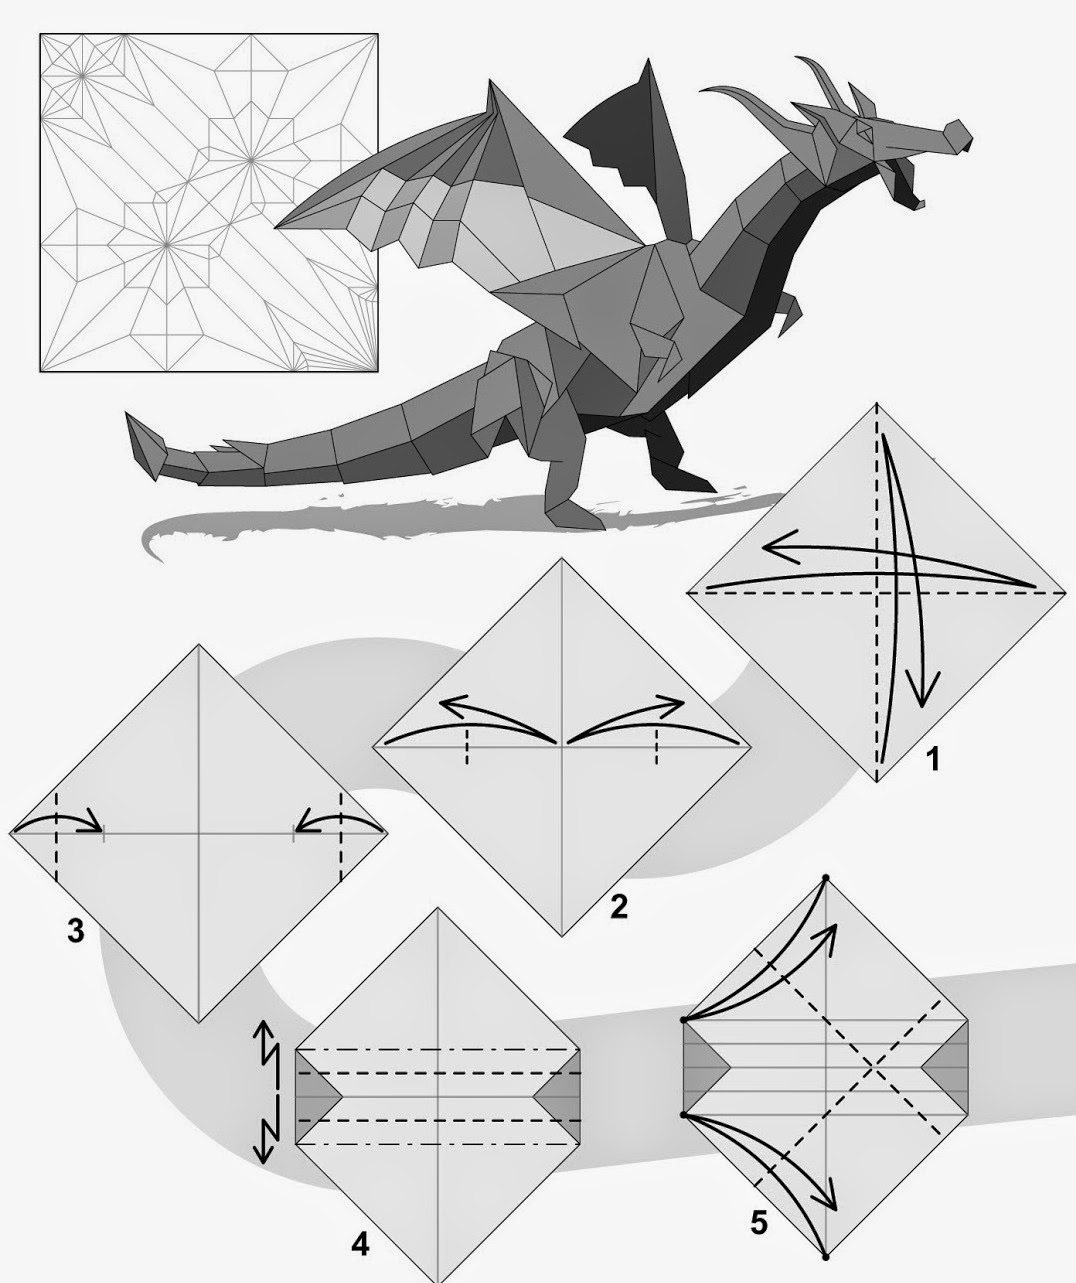 Драконы из бумаги поэтапно. Оригами из бумаги драконы схемы для начинающих. Оригами из бумаги схема сборки дракон для начинающих. Оригами инструкция дракон для начинающих. Бумажные драконы оригами инструкция.